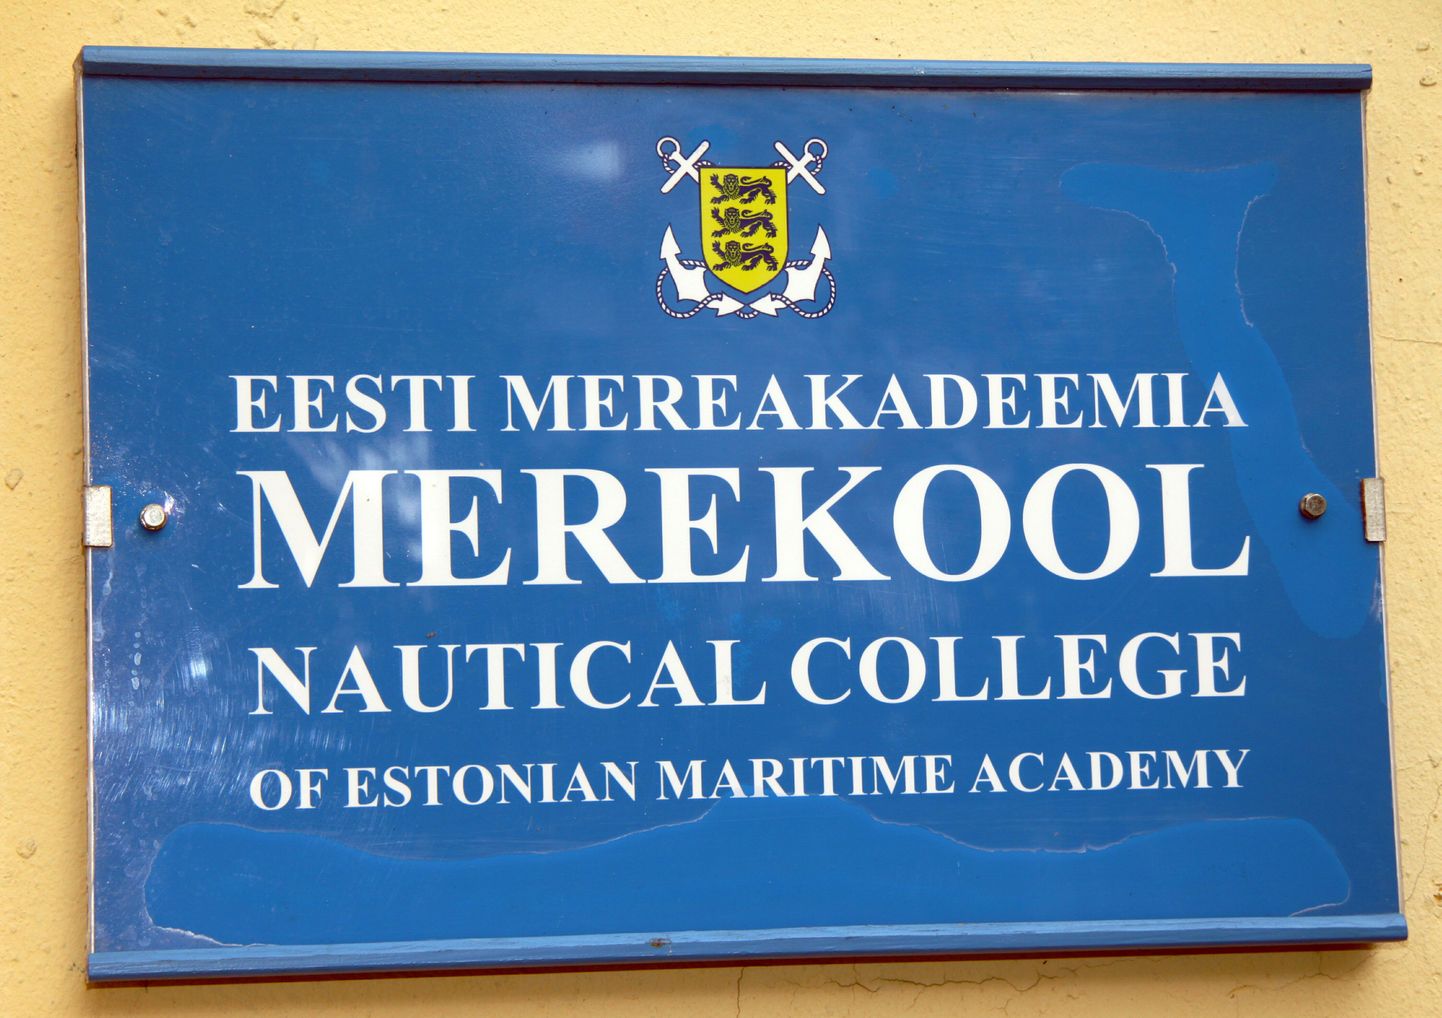 Eesti mereakadeemia otsustas neli aastat tagasi avatud Pärnu osakonna sulgeda.